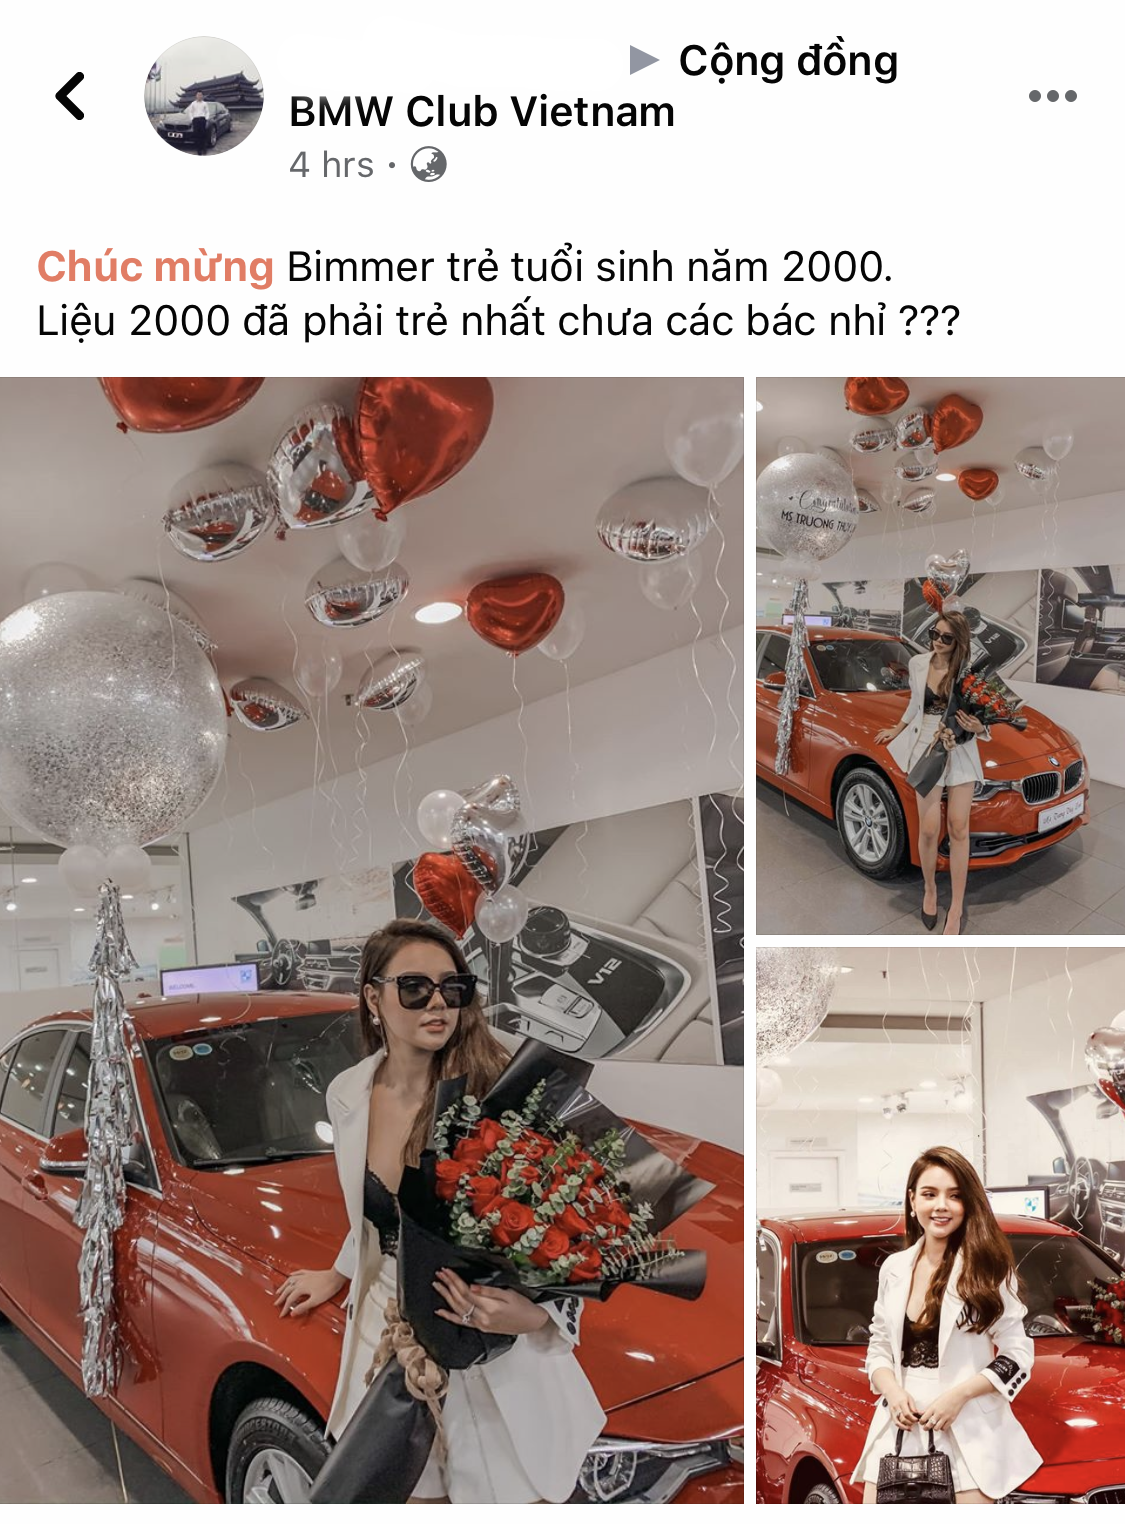 Hot girl Hà thành 19 tuổi sắm BMW 320i hơn 1,3 tỷ đồng, tuyên bố tự tặng bản thân trong thời gian tồi tệ nhất - Ảnh 1.